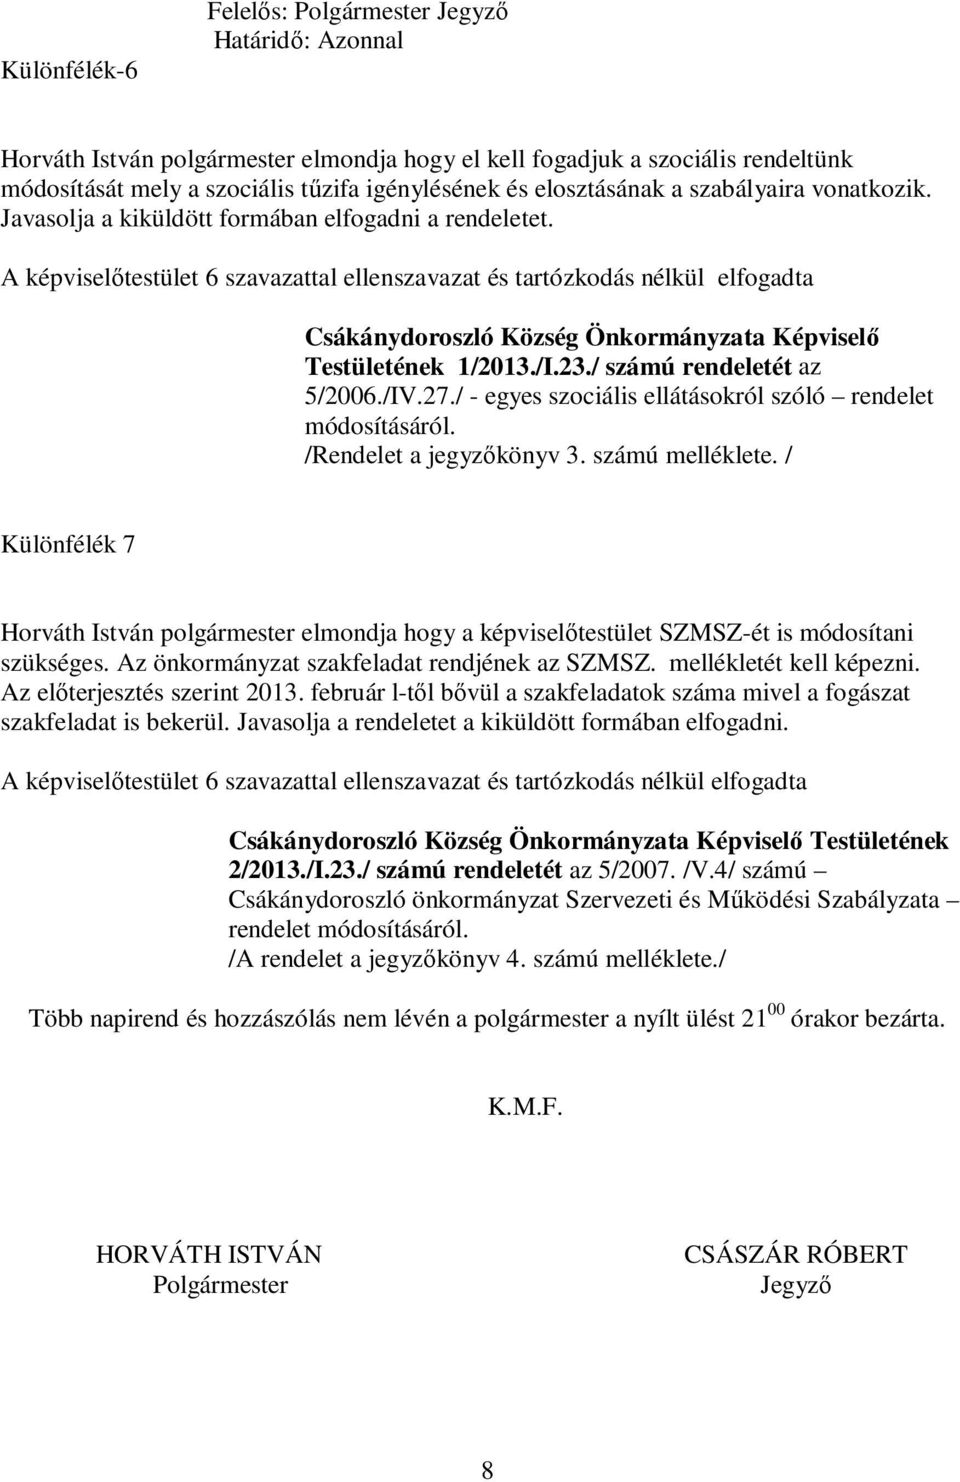 A képviselőtestület 6 szavazattal ellenszavazat és tartózkodás nélkül elfogadta Csákánydoroszló Község Önkormányzata Képviselő Testületének 1/2013./I.23./ számú rendeletét az 5/2006./IV.27.